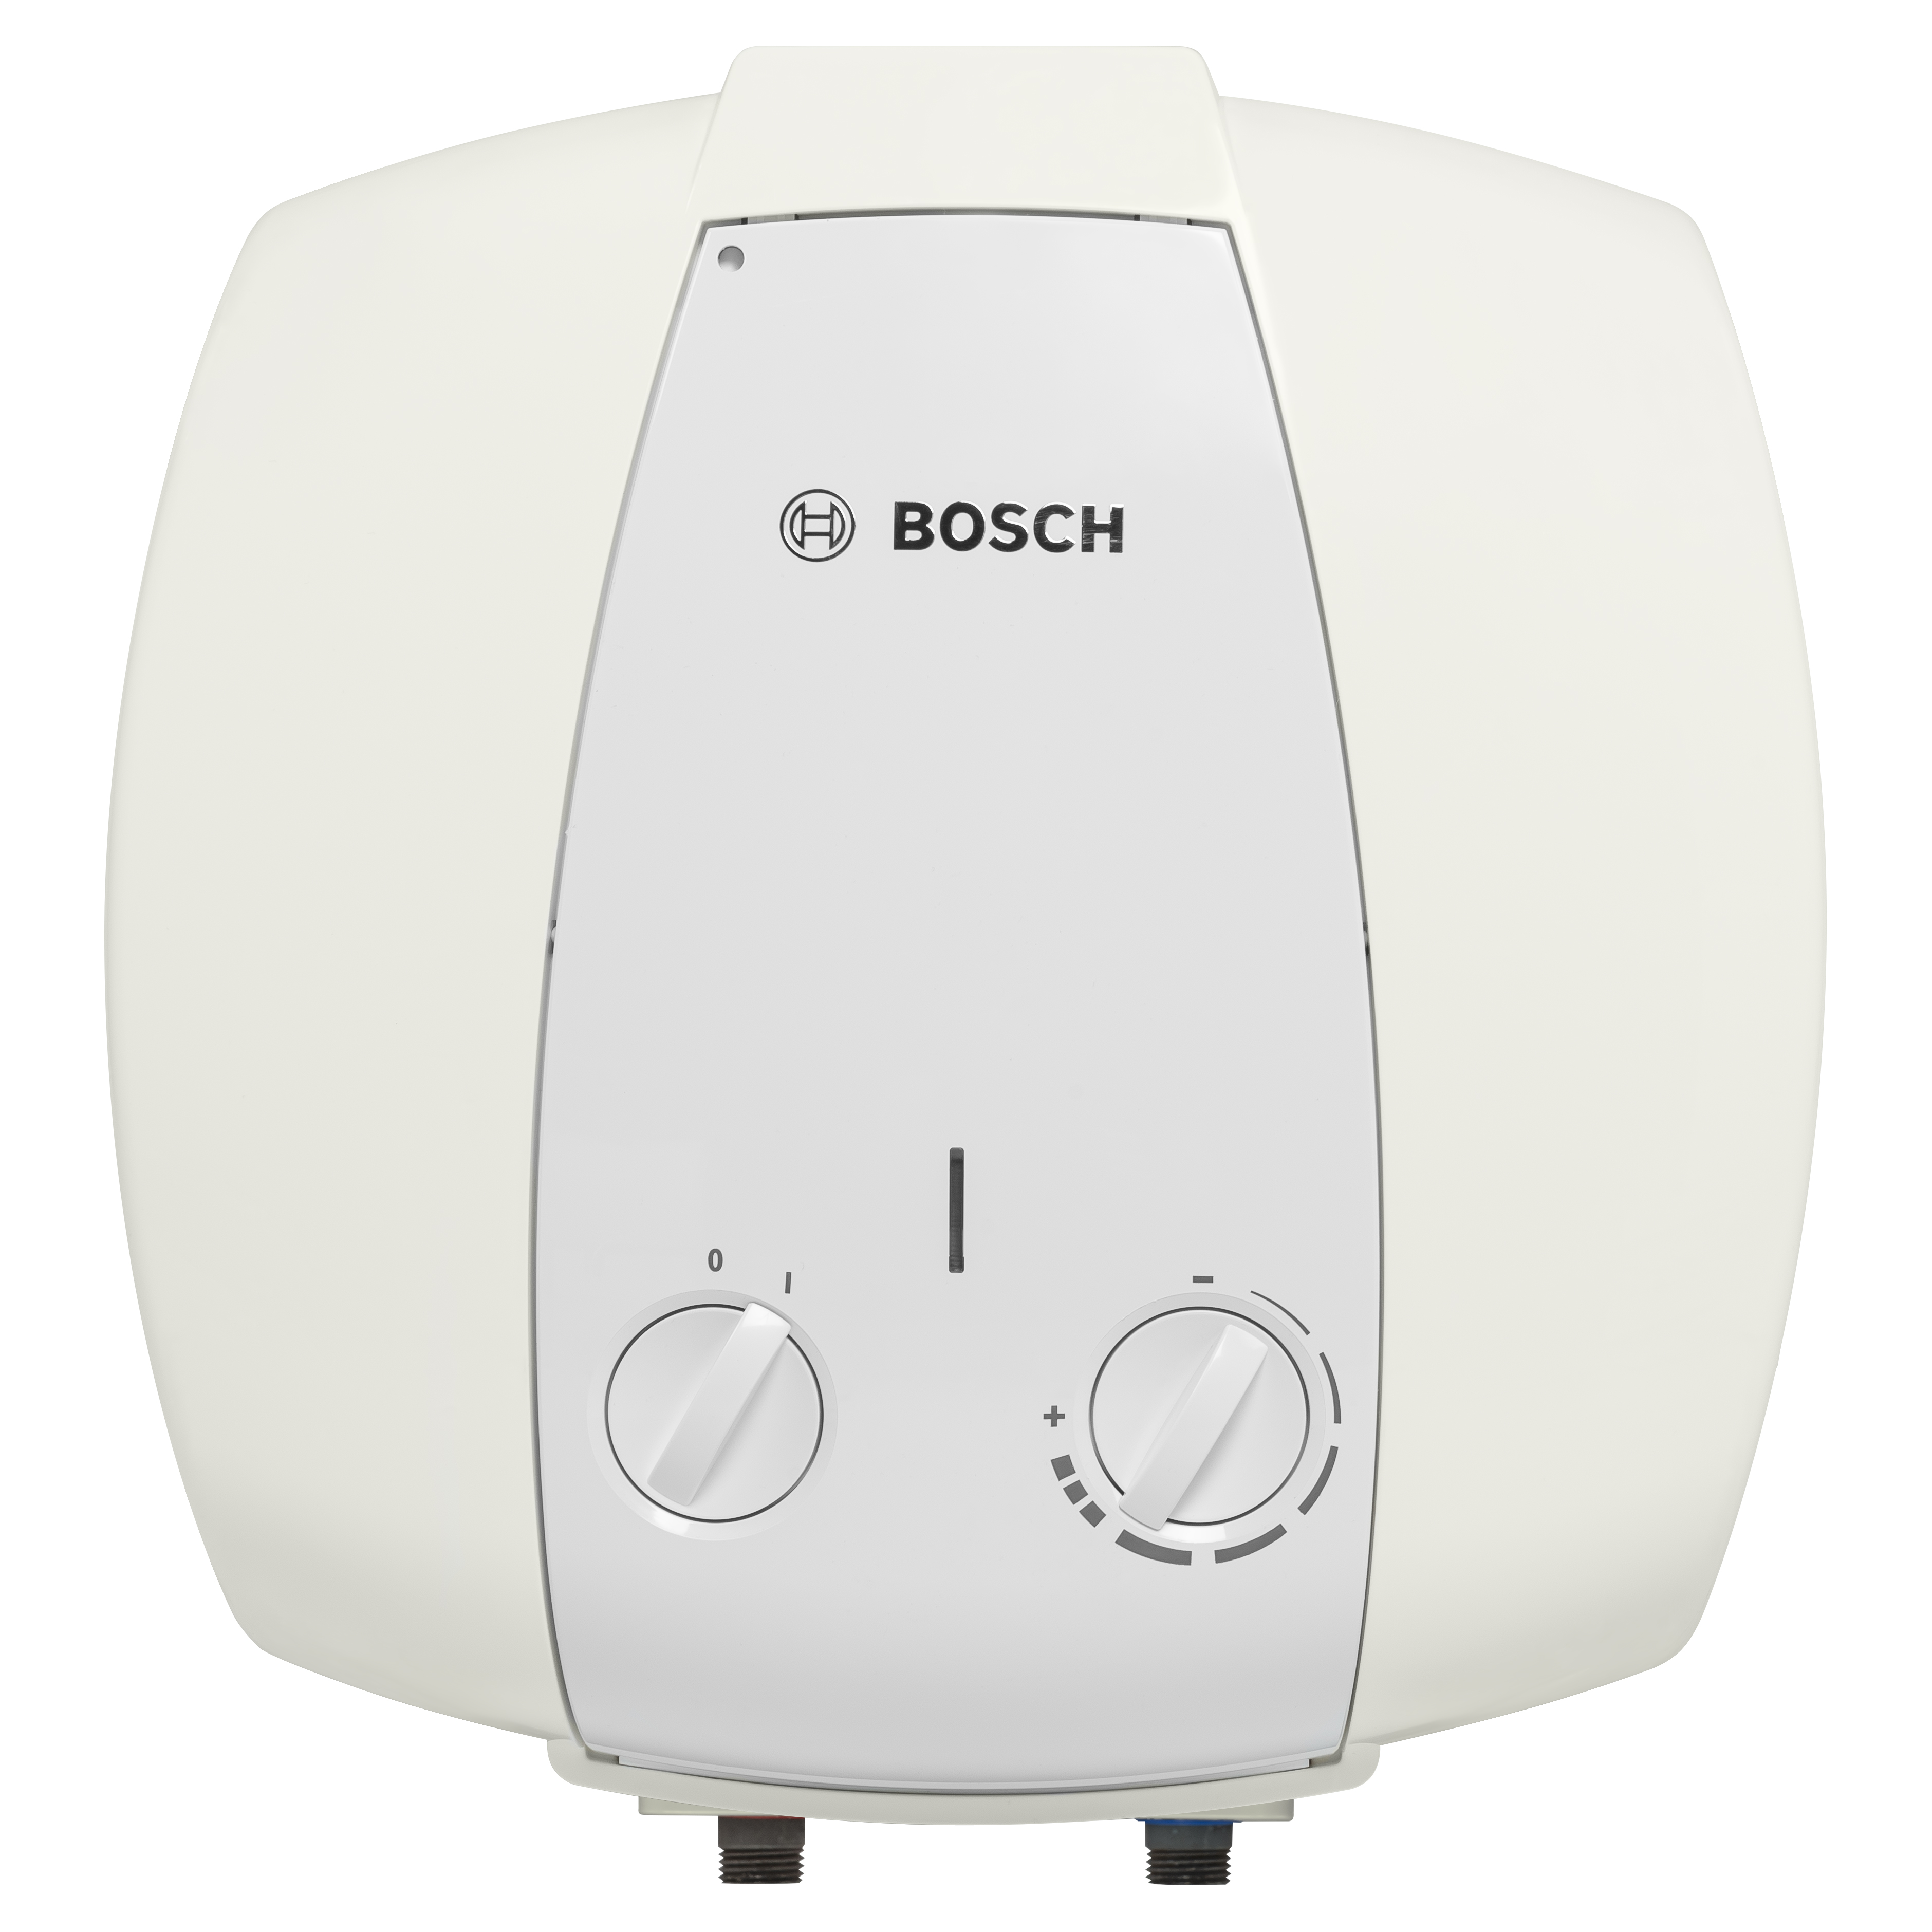 Отзывы бойлер bosch на 15 литров Bosch TR 2000 T 15 B (7736504746) в Украине